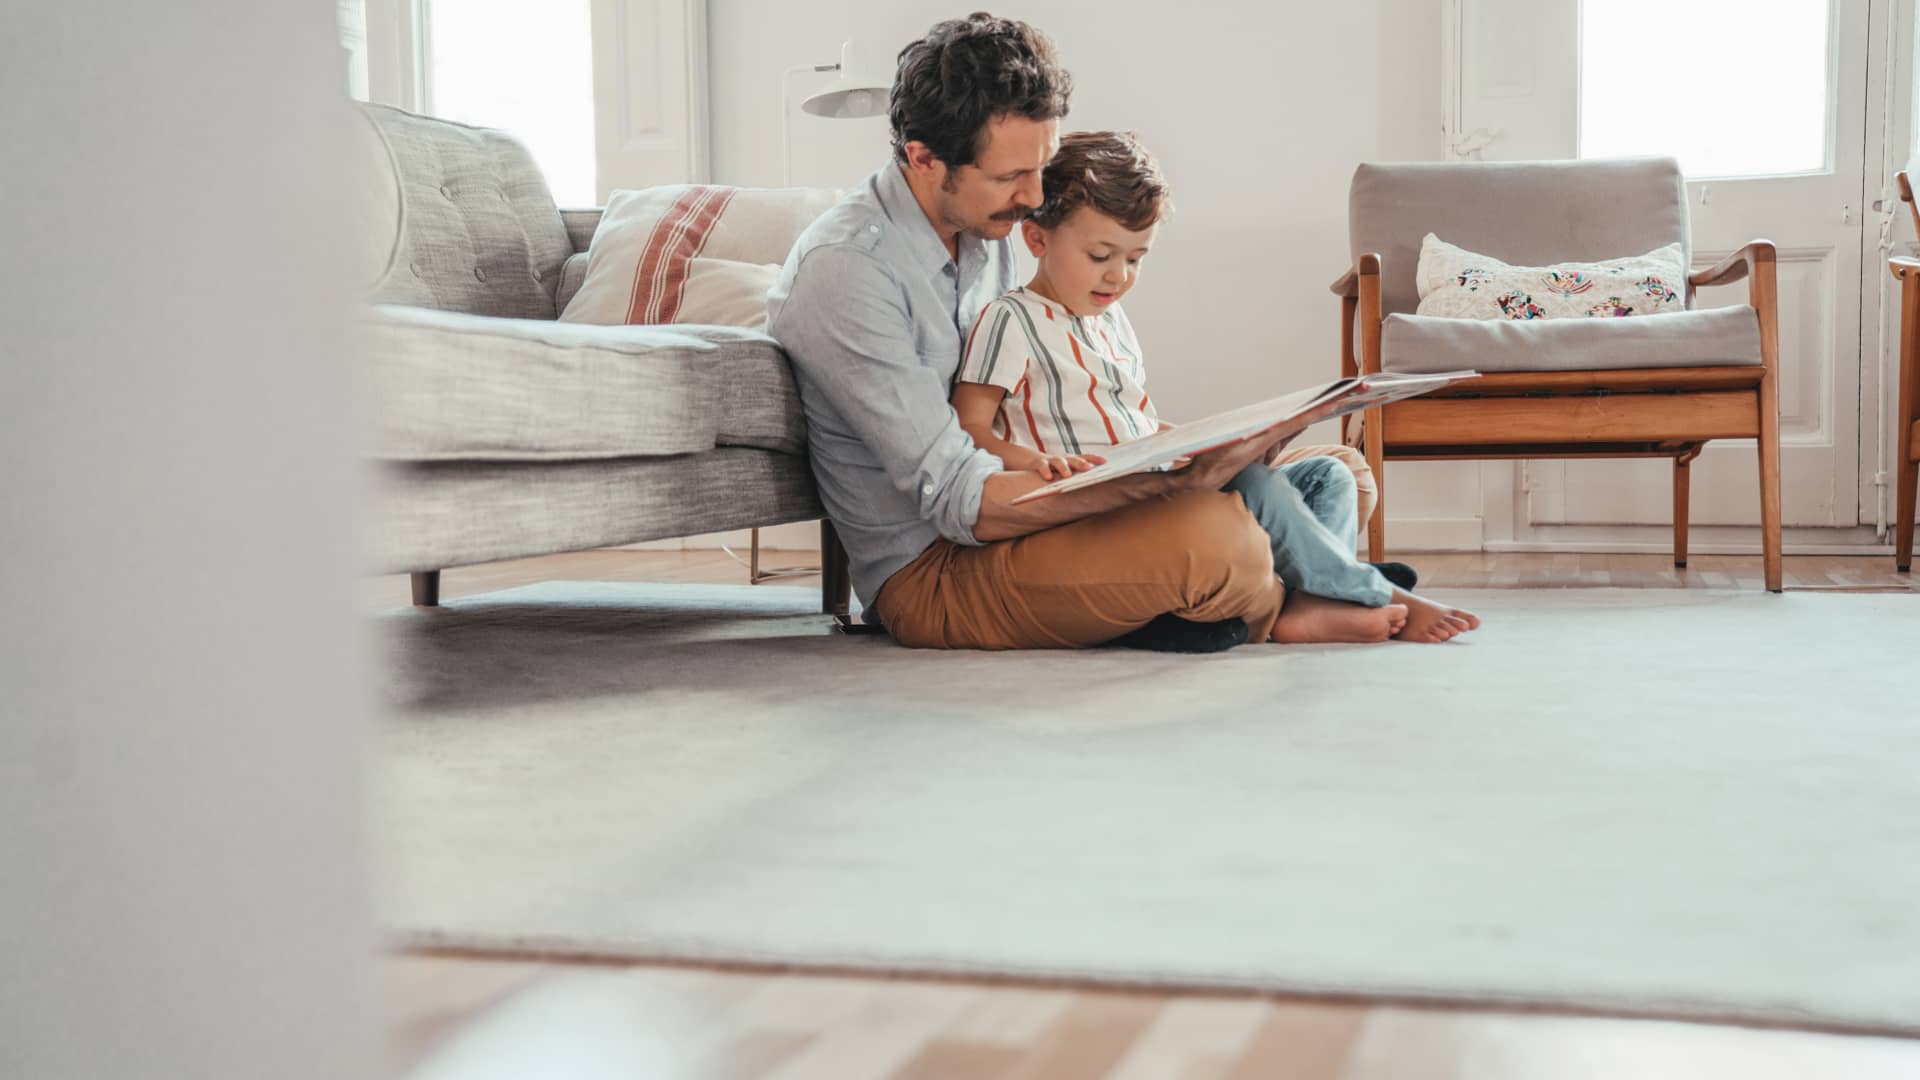 Padre enseñando libro a su hijo sentados en el suelo de su casa con seguro de hogar de allianz